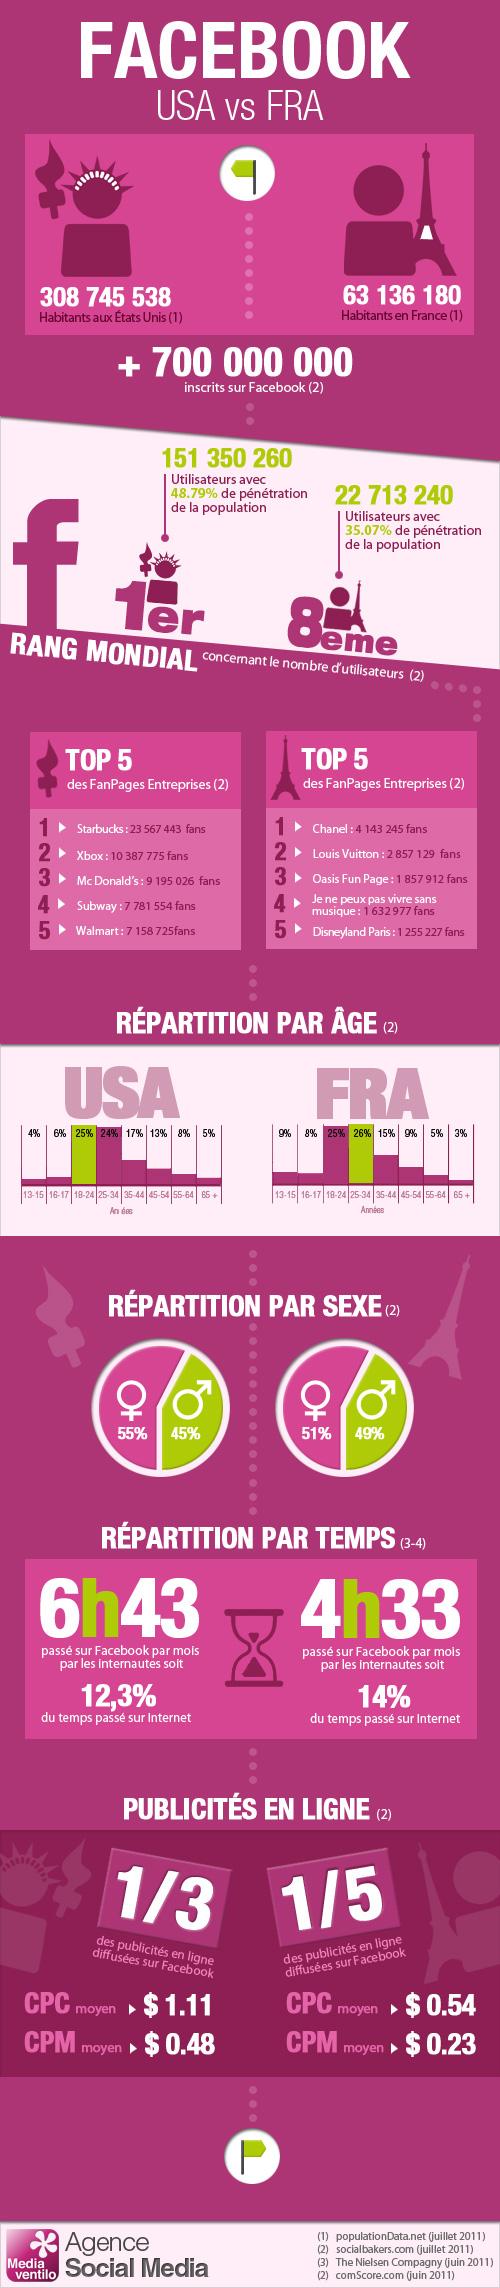  infographie de l'utilisation de Facebook en France et aux Etats Unis